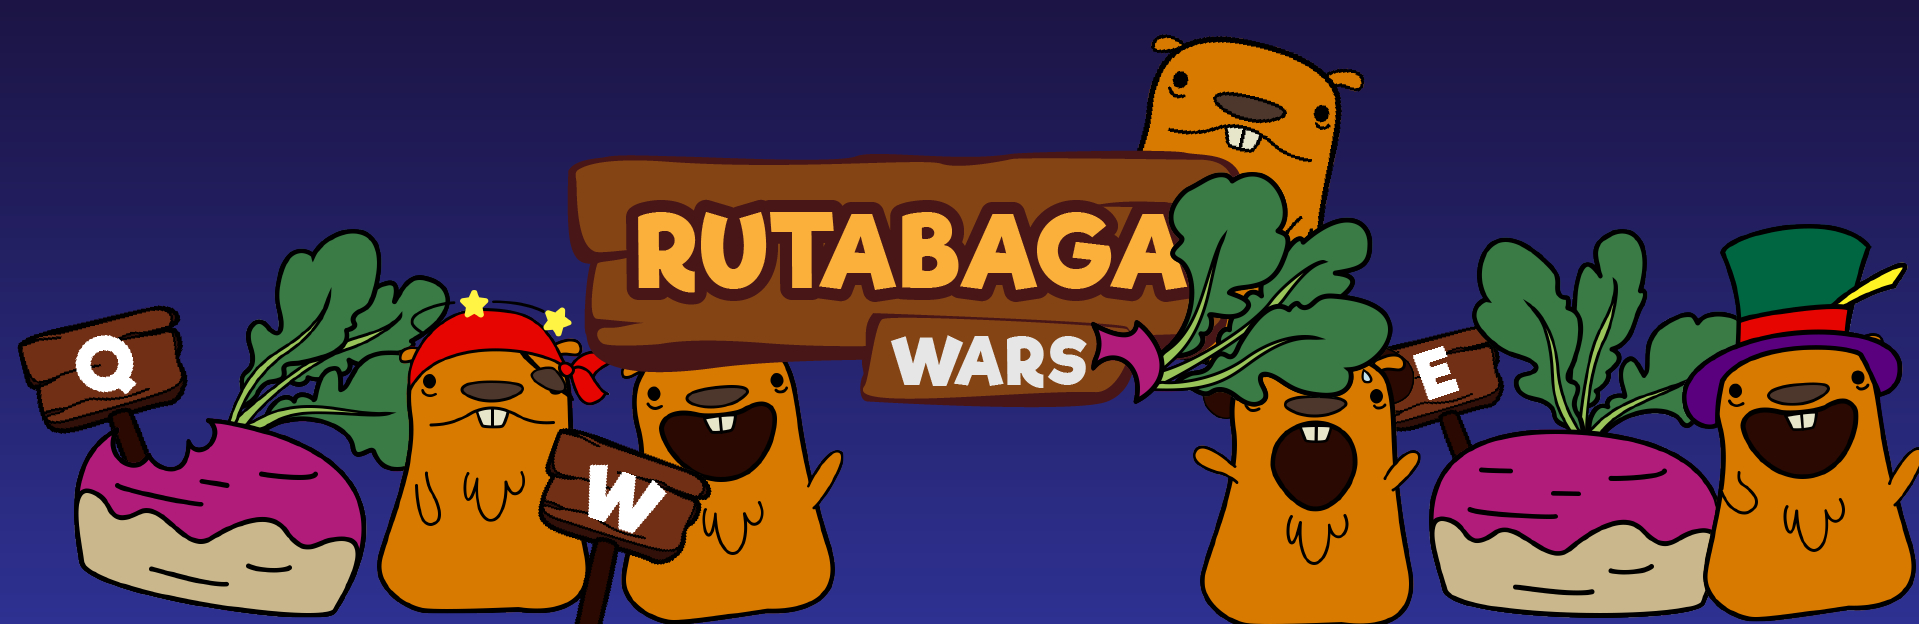 Rutabaga Wars